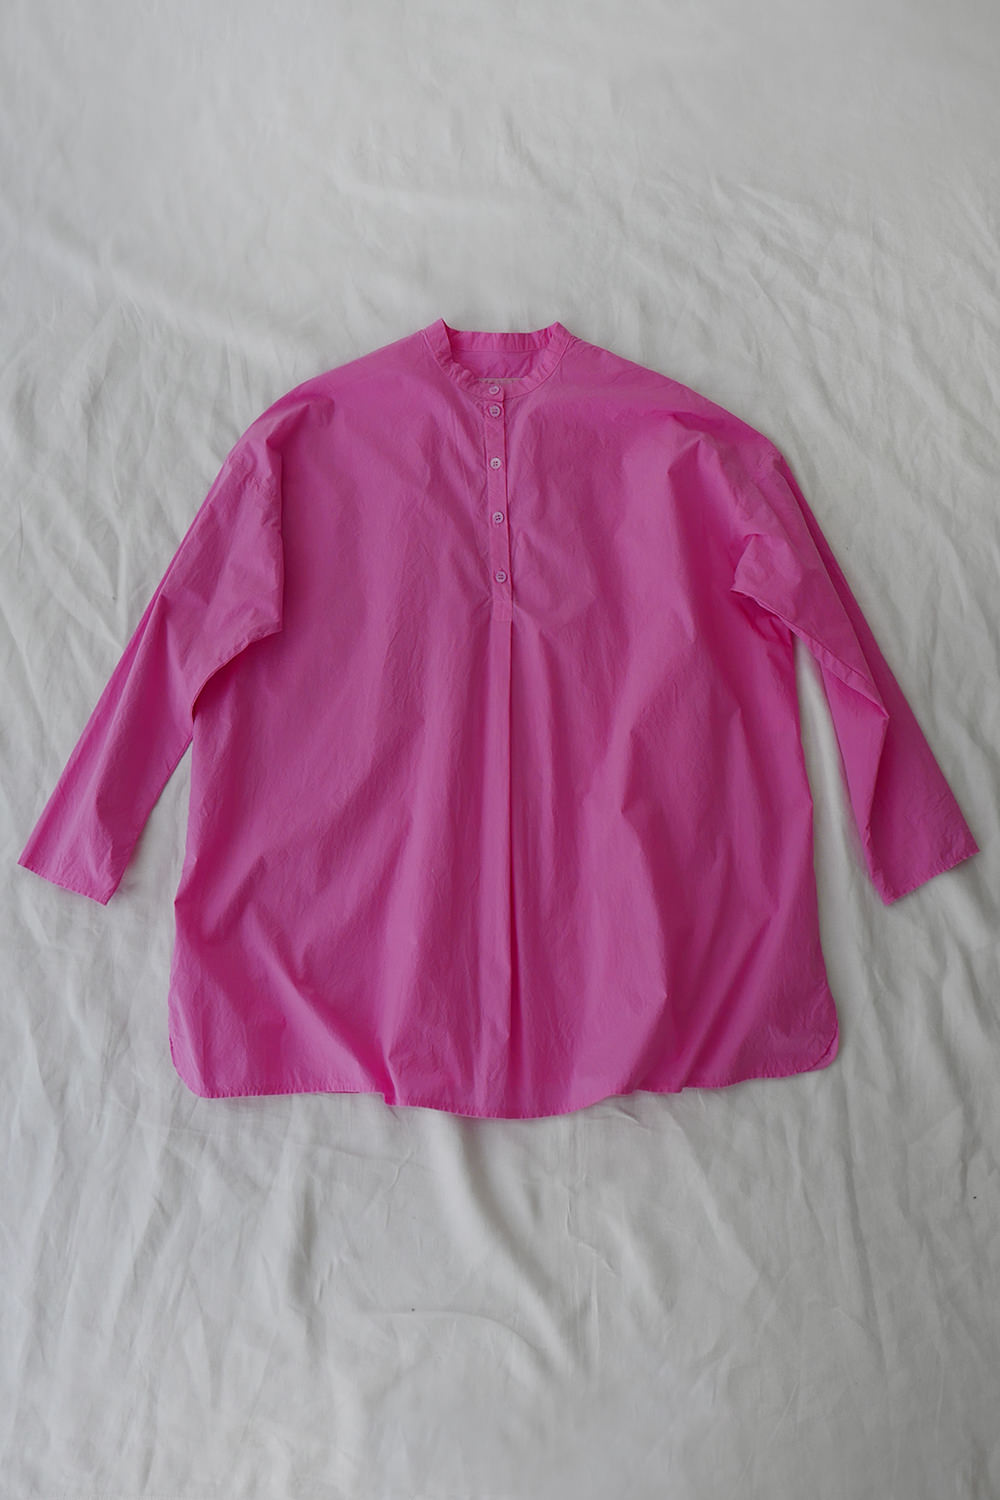 Manuelle Guibal Cotton Shirt Pink/Bubble Top Picture